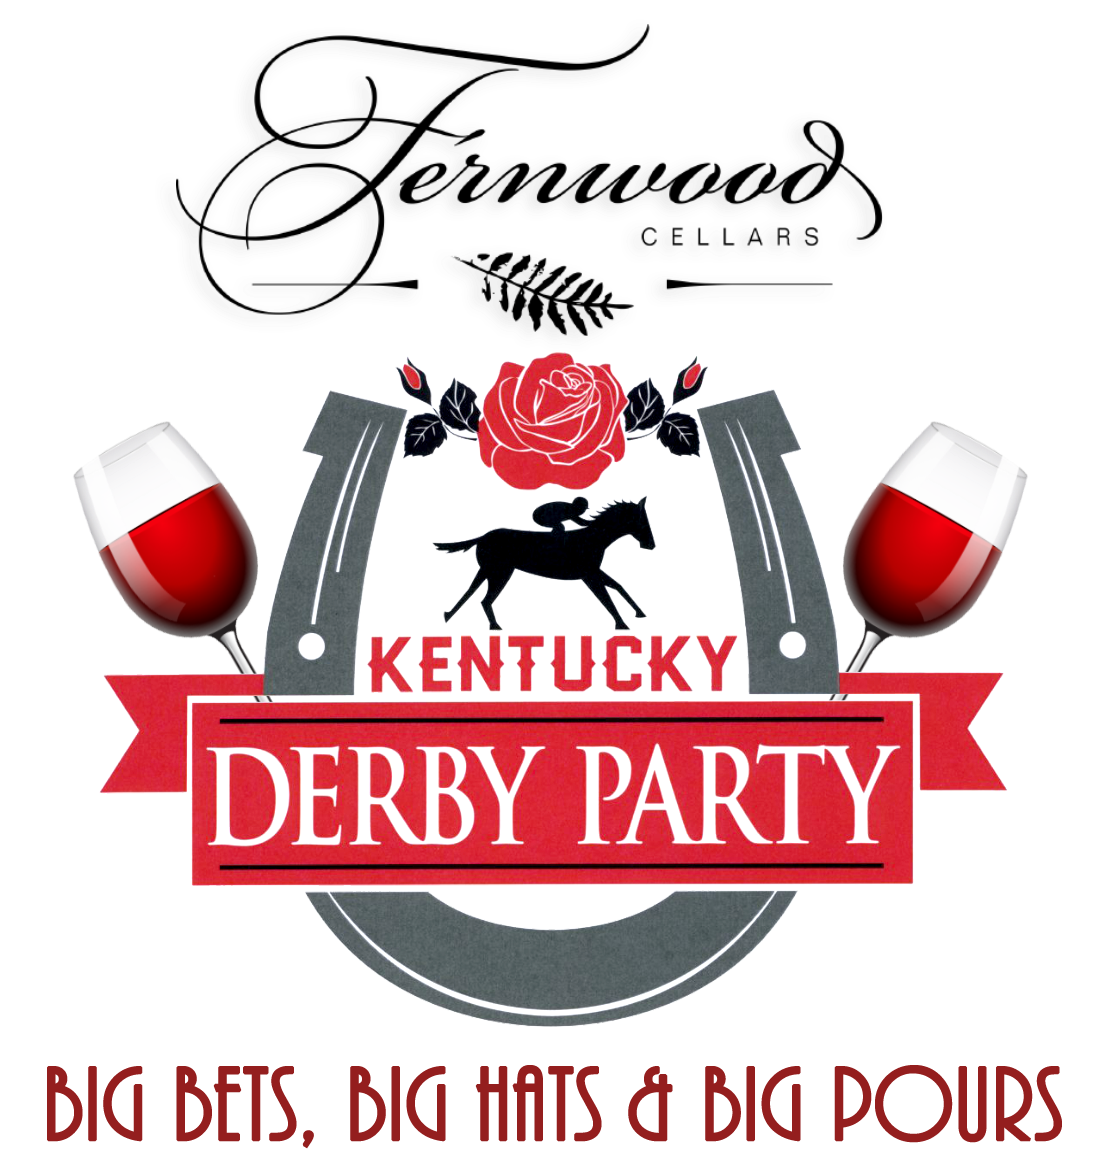 kentucky-derby-party-fernwood-cellars